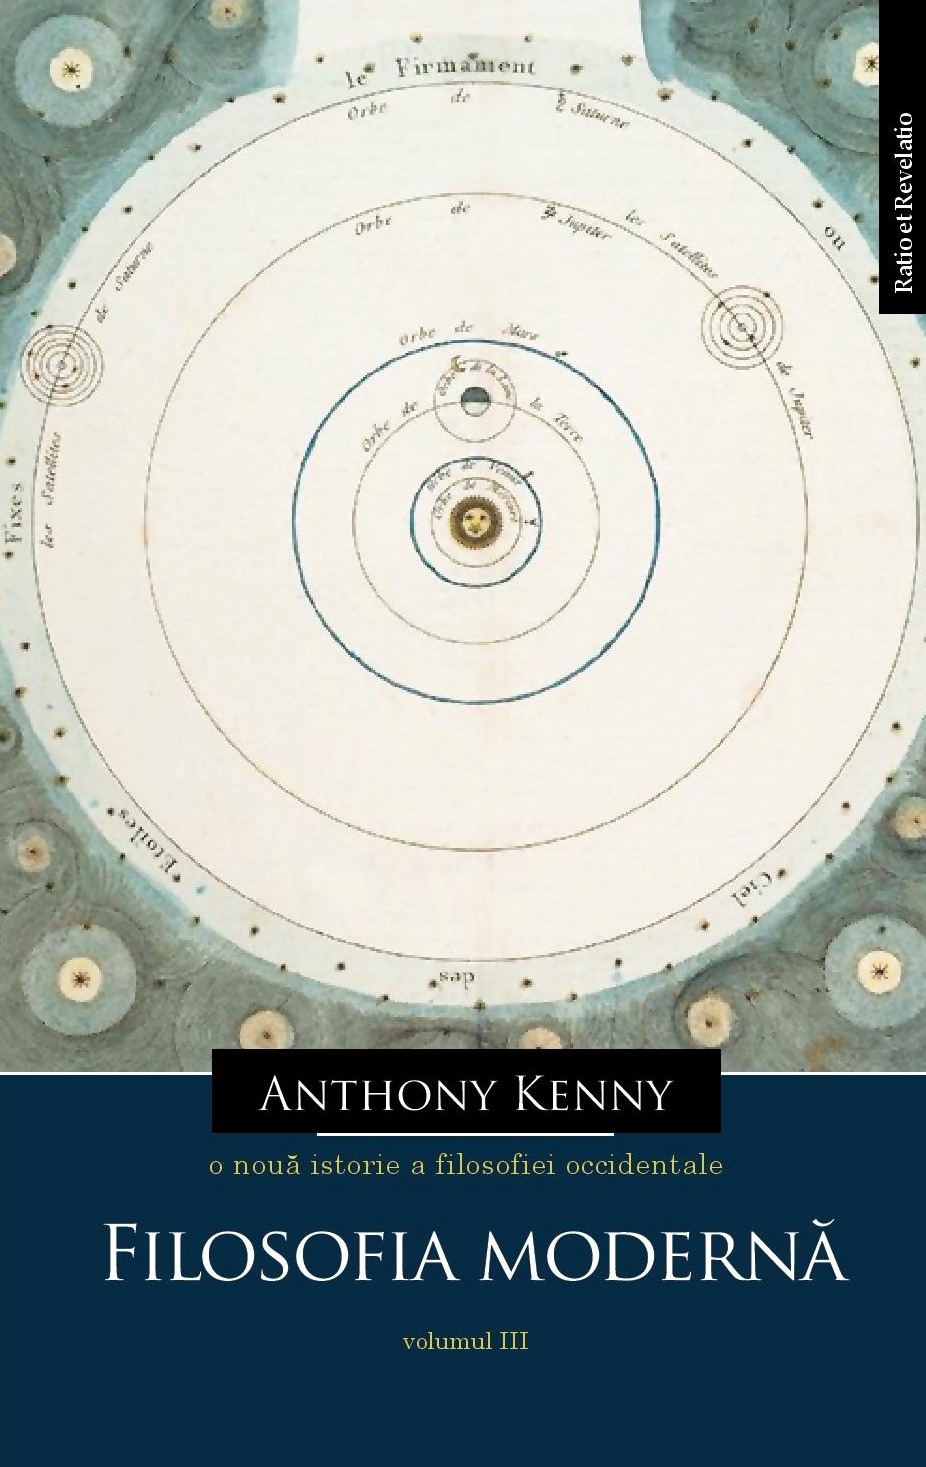 PDF O noua istorie a filosofiei occidentale, volumul III | Anthony Kenny carturesti.ro Carte